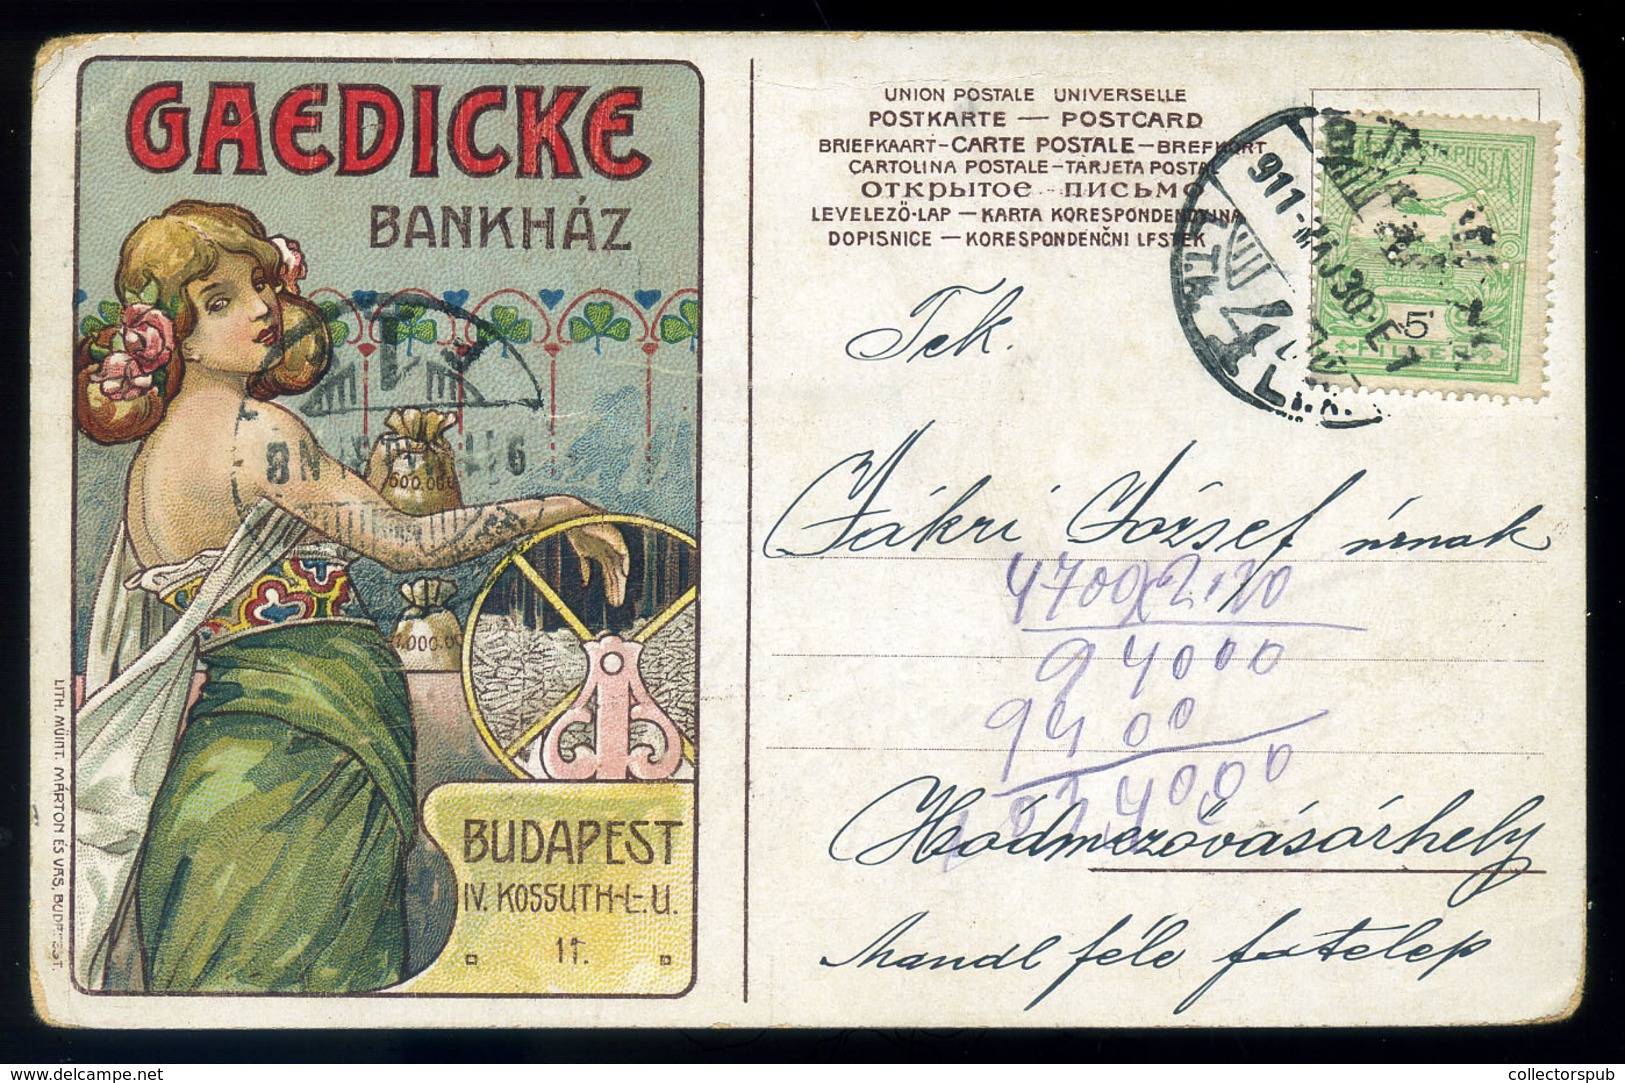 BUDAPEST 1911. Geadicke Bankház, Ritka Reklám Képeslap Céglyukasztásos Bélyeggel Hódmezővásárhelyre Küldve  /  1911 Gead - Gebruikt